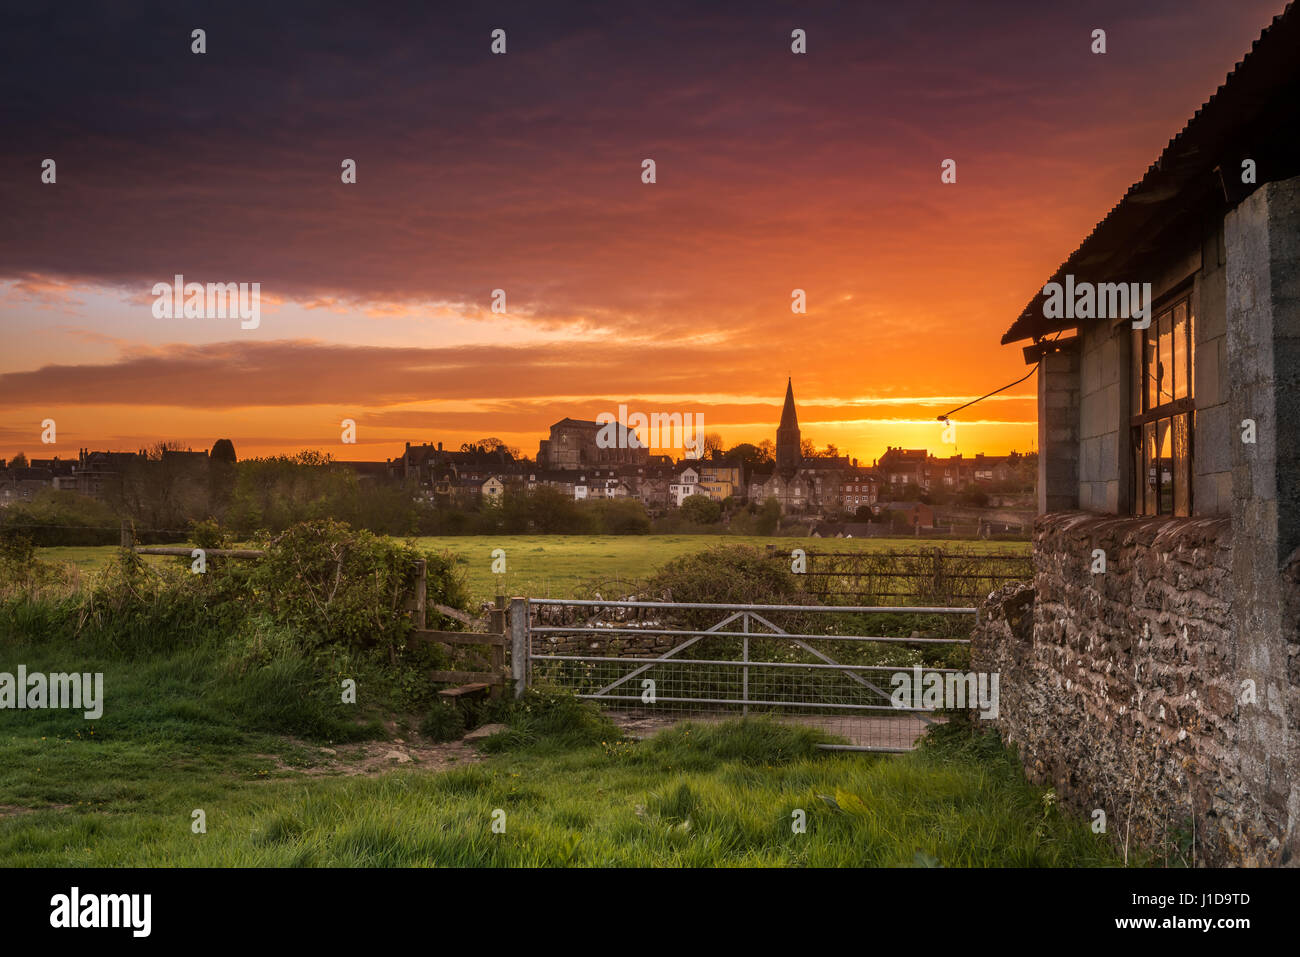 Regno Unito - Previsioni del tempo - Dopo una notte fredda in aprile, un bel mattino cielo si illumina di rosso al di sopra del Wiltshire città mercato di Malmesbury. Foto Stock